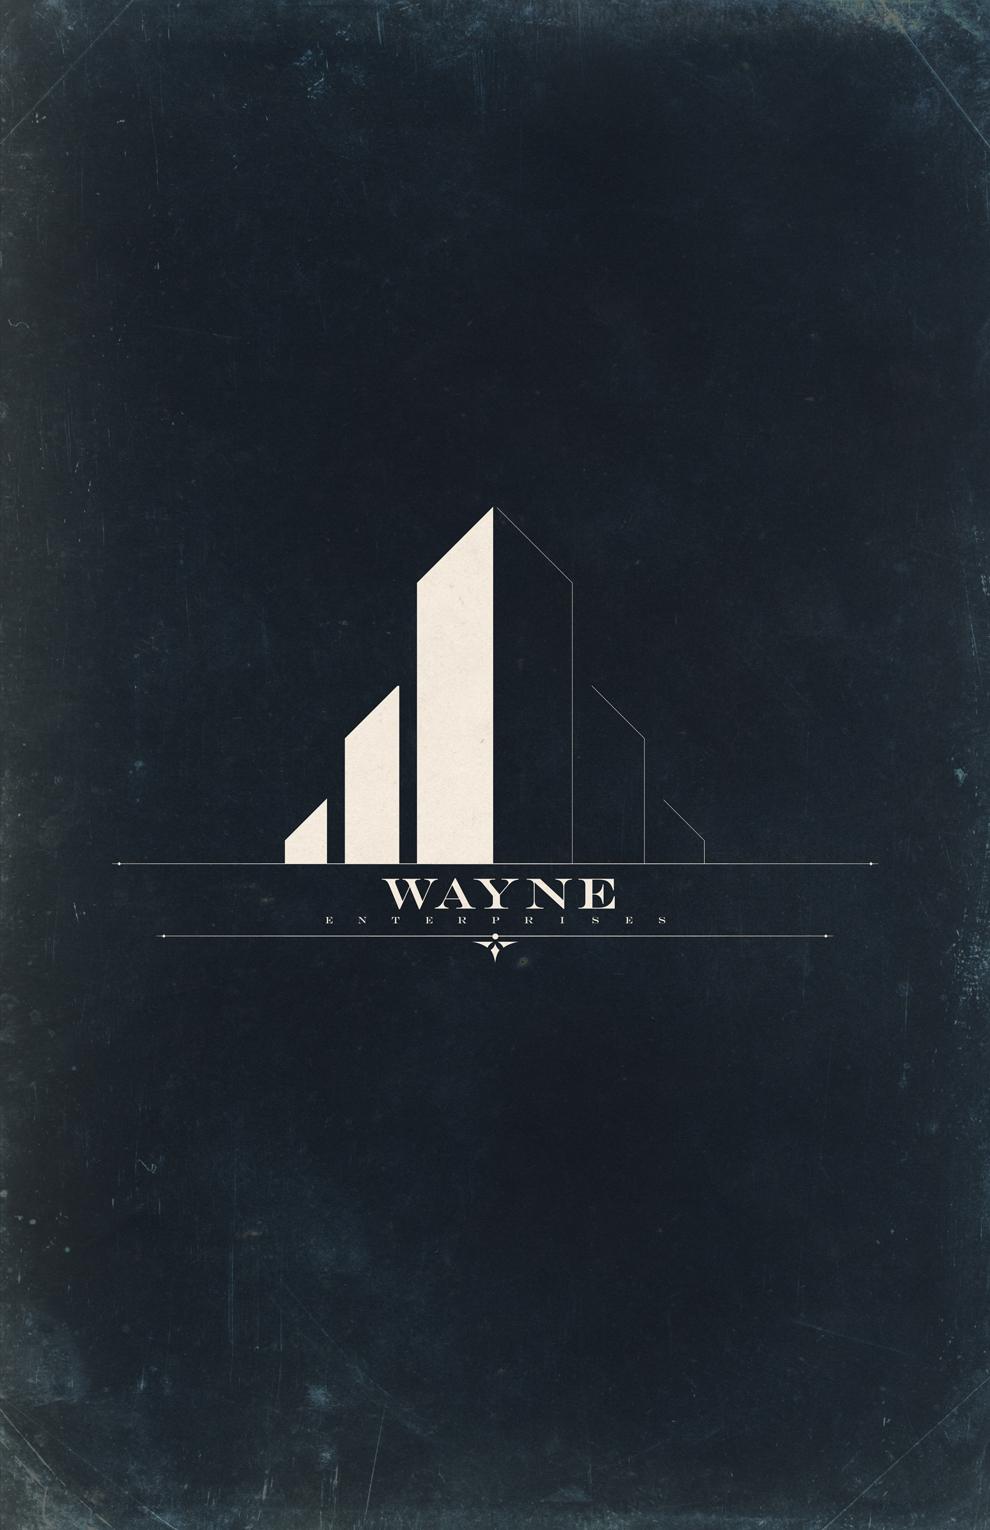 Wayne enterprises Logos